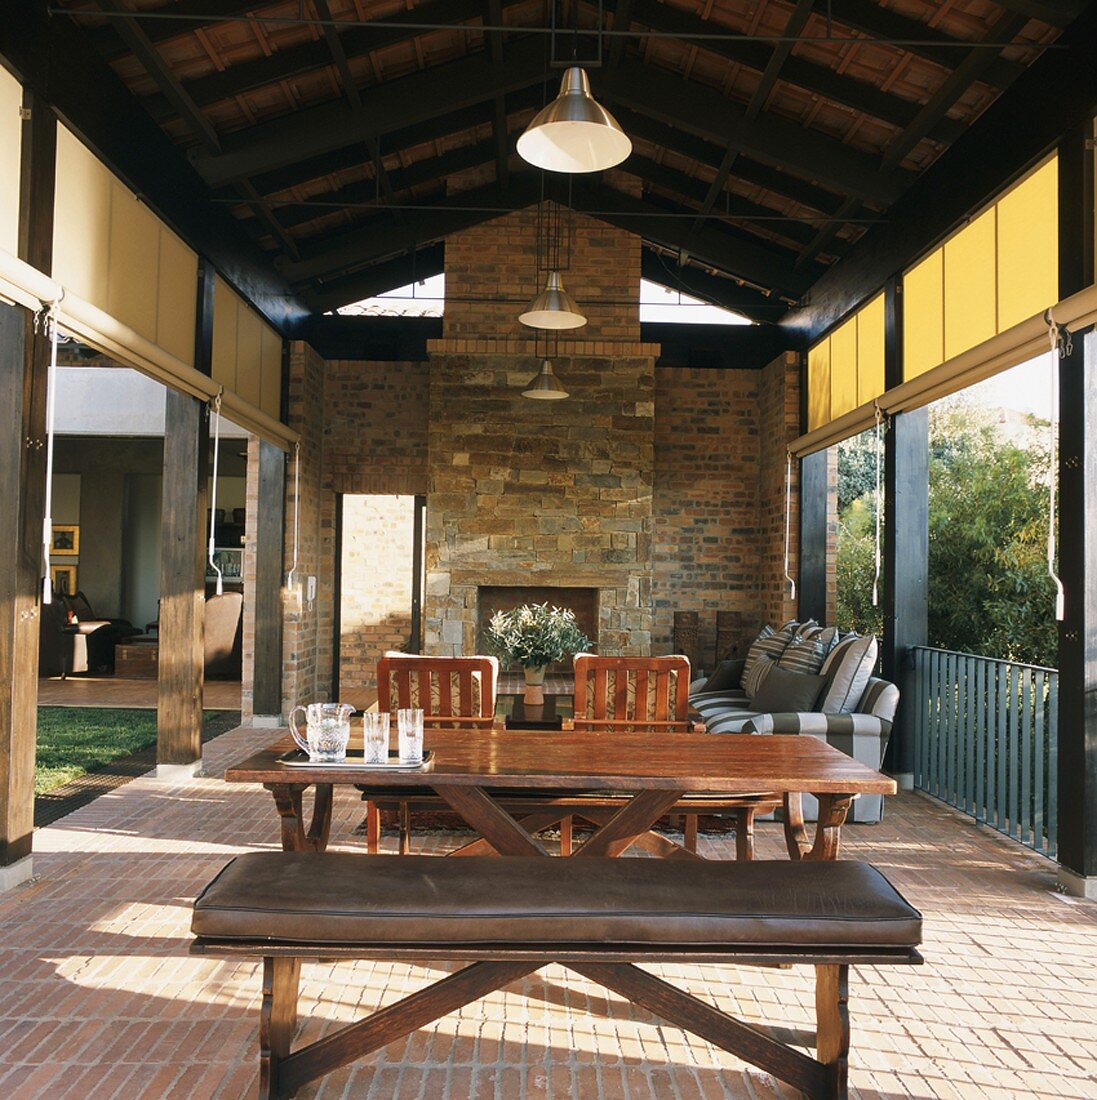 Wohn/Essraum im Freien - Terrasse mit rustikalem Kamin unter der offenen Dachkonstruktion und seitlichen Sonnenschutz-Rollos